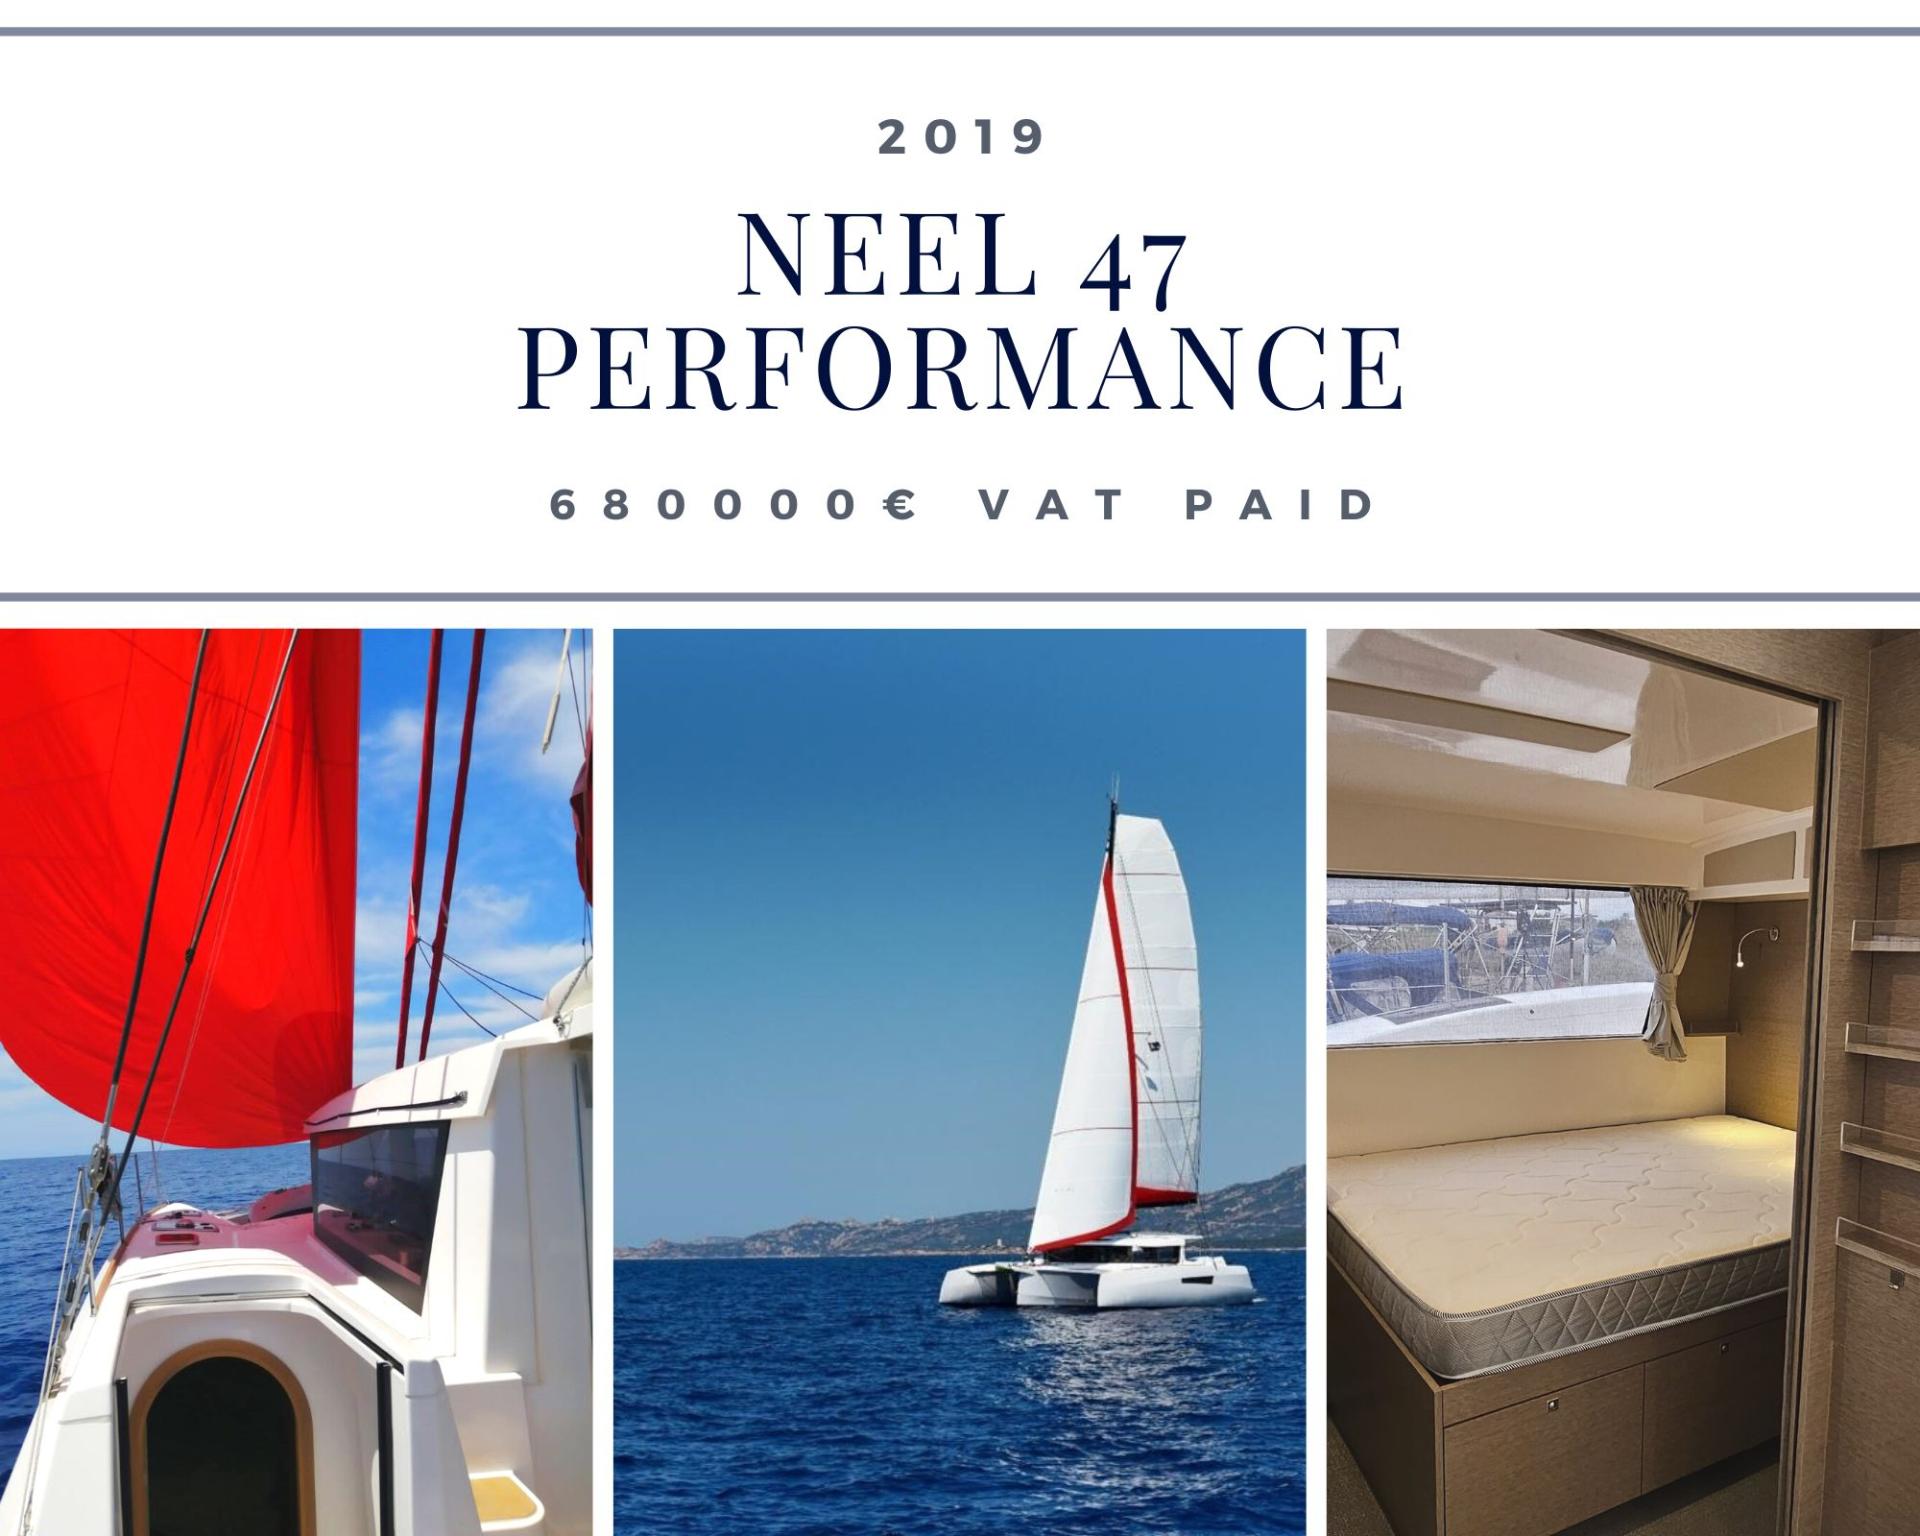 Neel 47 Premium performance